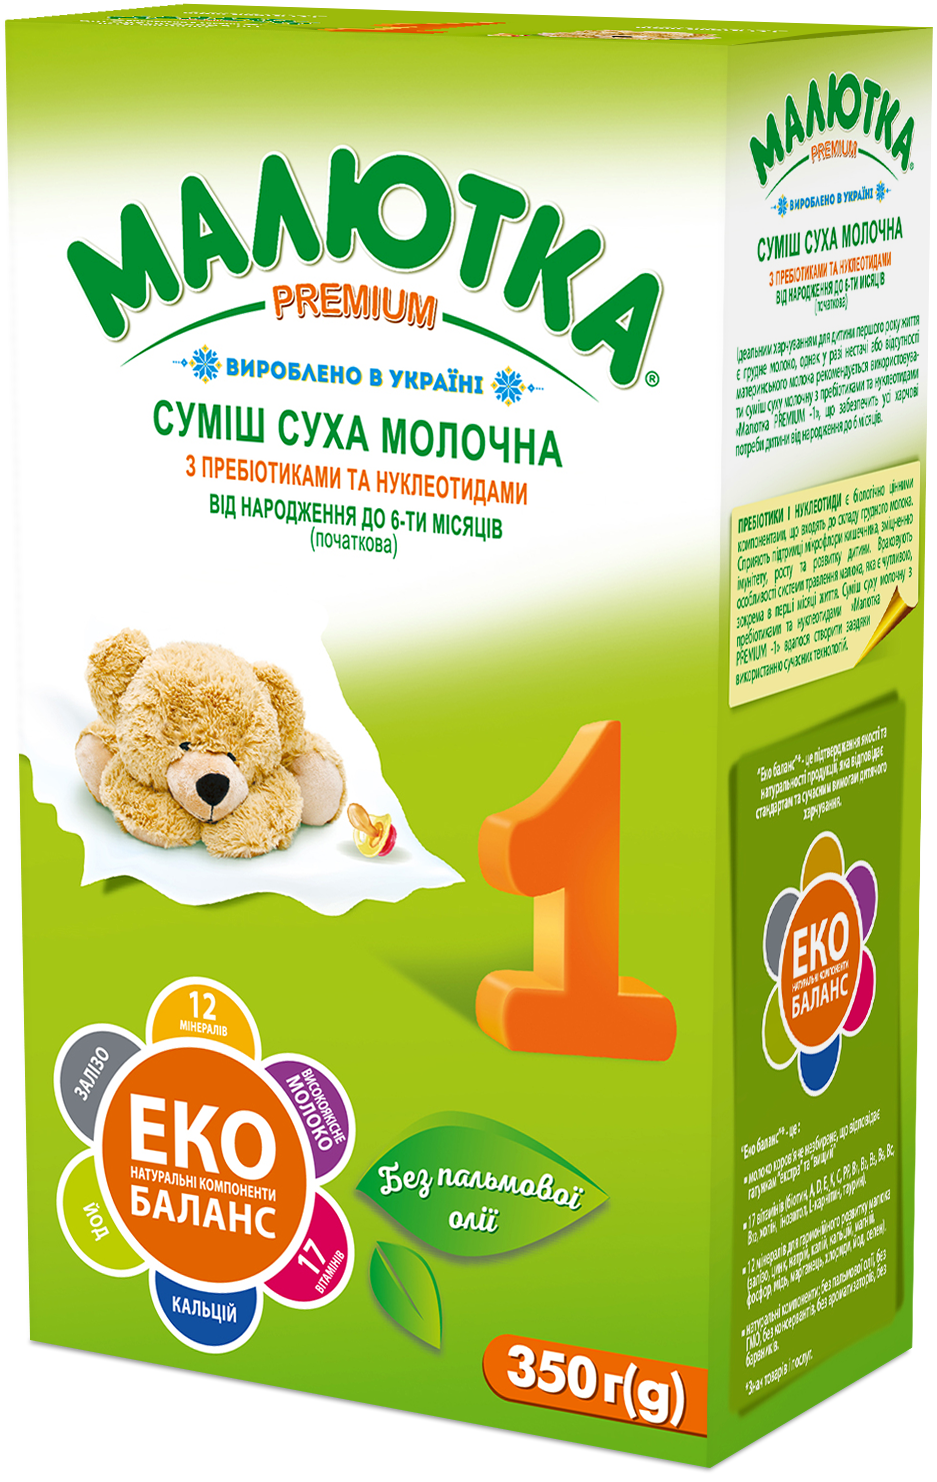 Суміш суха молочна з пребіотиками та нуклеотидами для харчування дітей від народження до 6-ти місяців (початкова) 